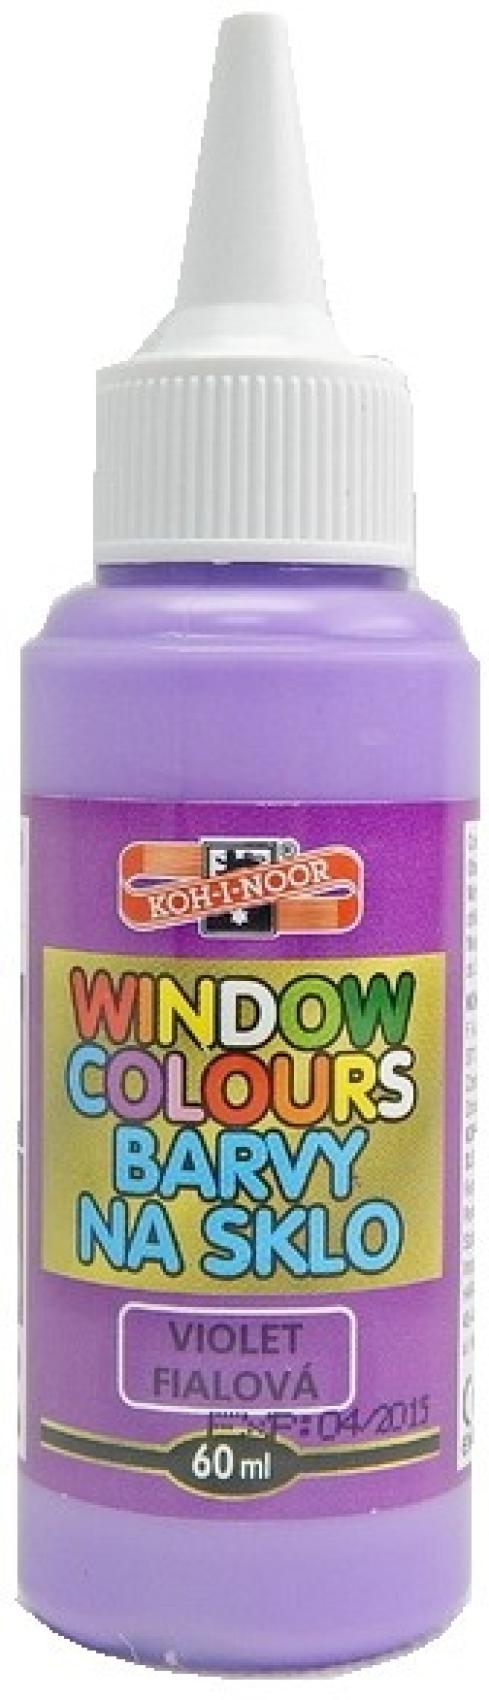 Barvy na sklo Koh-i-noor 60ml fialov - Kliknutm na obrzek zavete